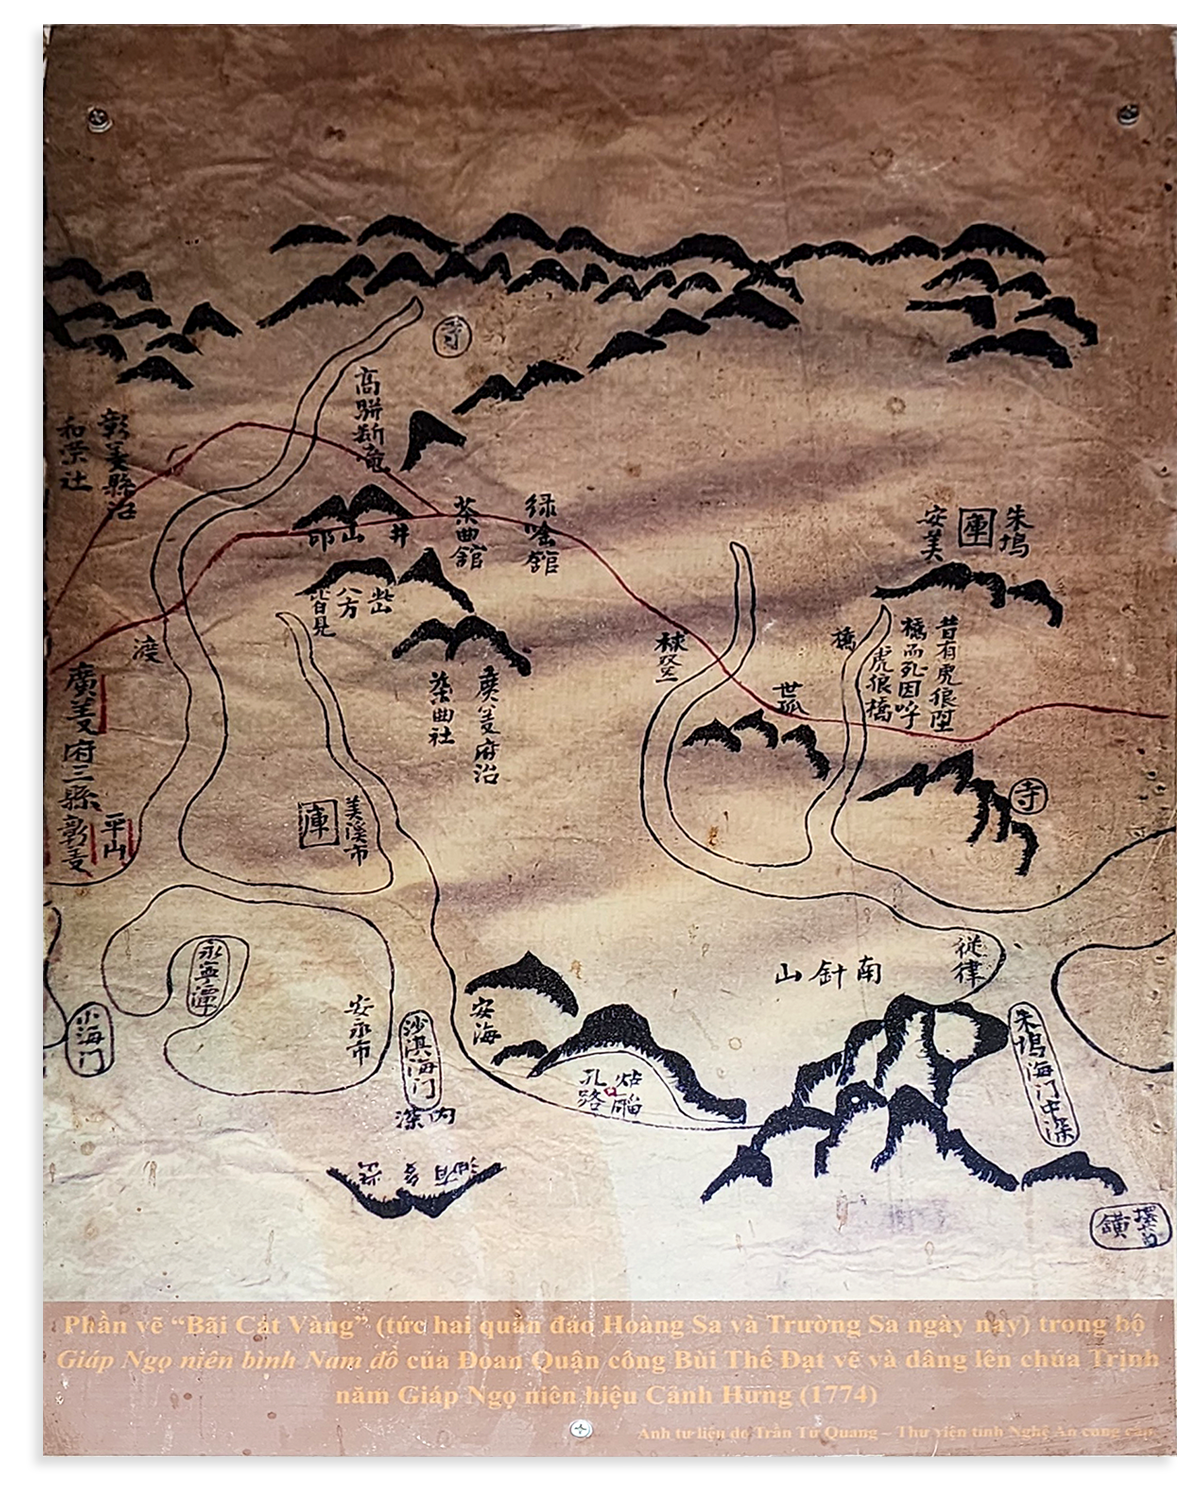 Phần vẽ Bãi Cát Vàng (tức quần đảo Hoàng Sa và Trường Sa) của Đoan Quận công Bùi Thế Đạt vẽ dâng lên chúa Trịnh. Đây được xem là 1 trong 15 bộ bản đồ vẽ Hoàng Sa Trường Sa.